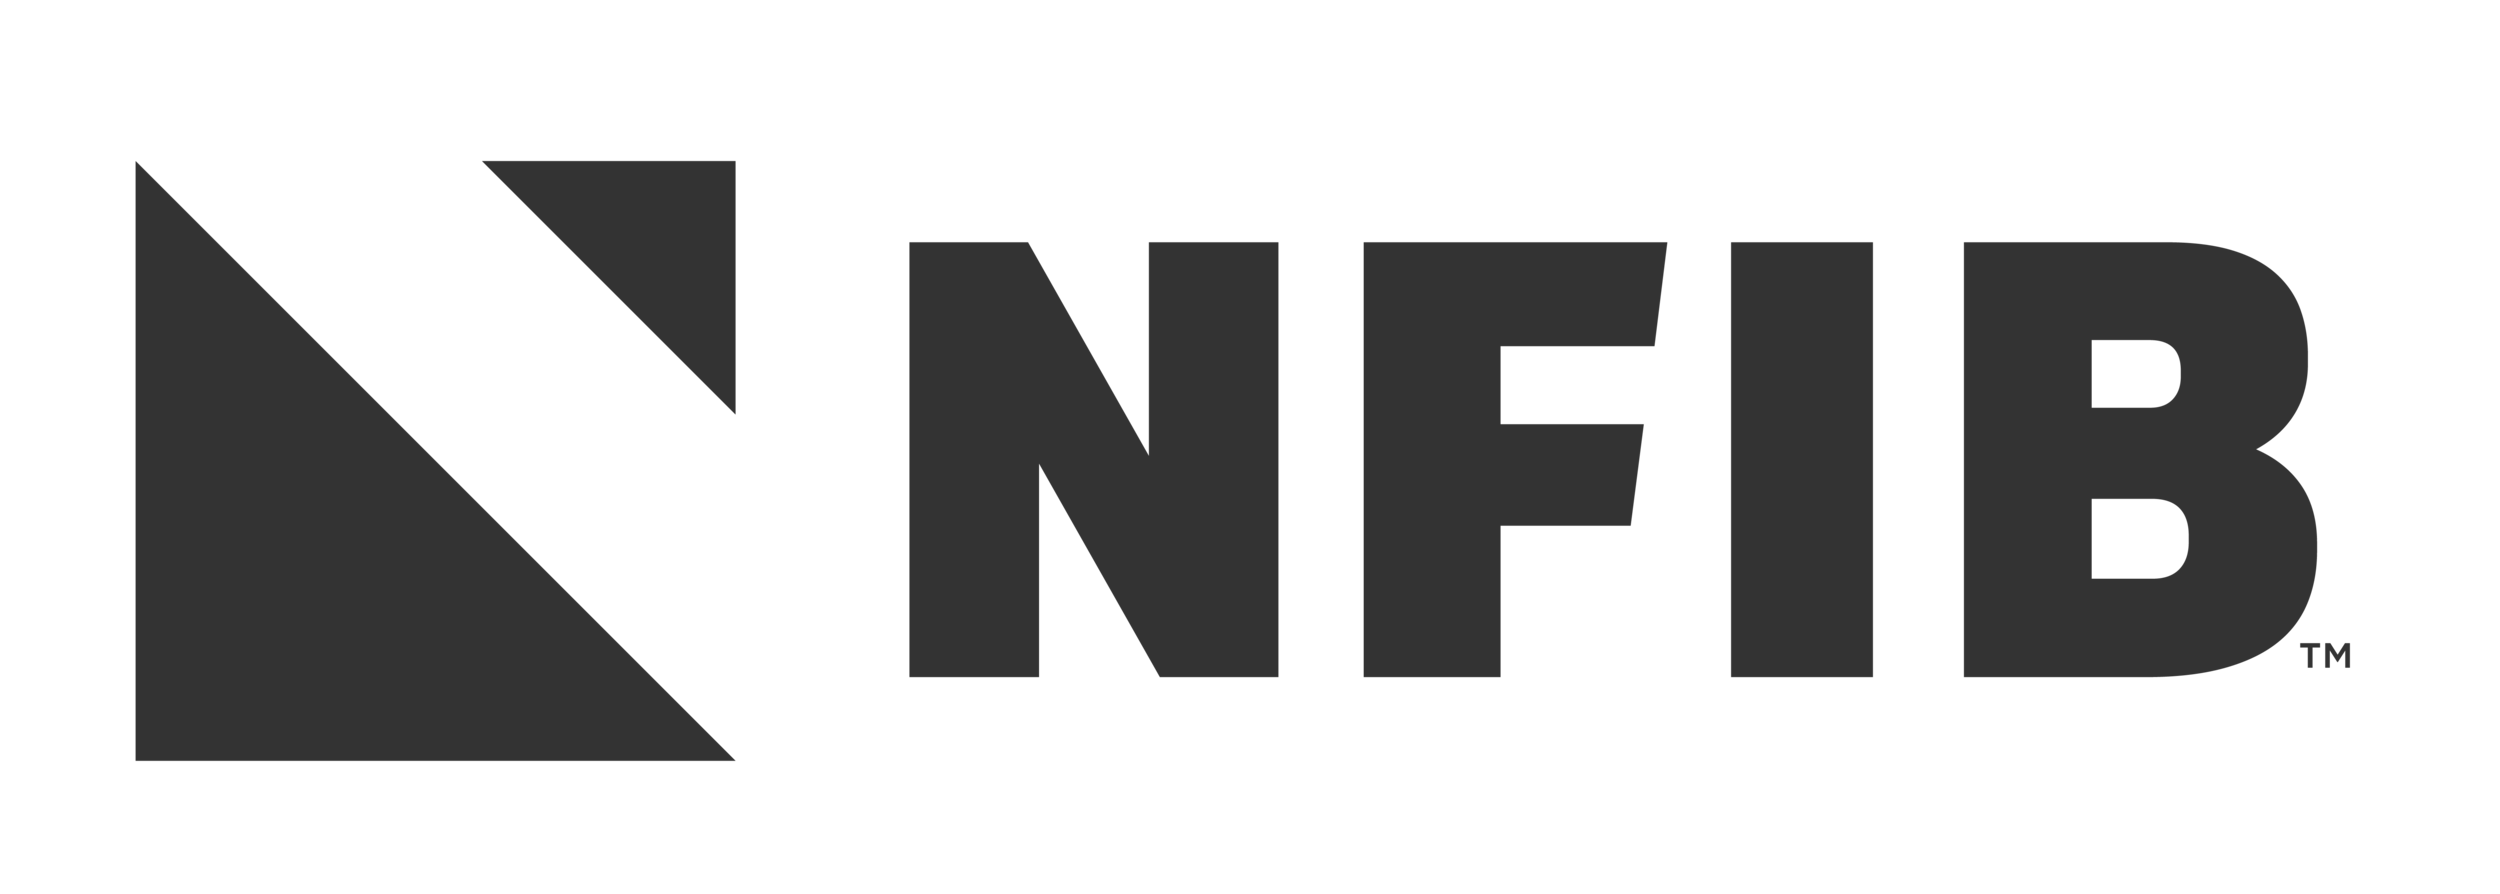 NFIB Logo.png